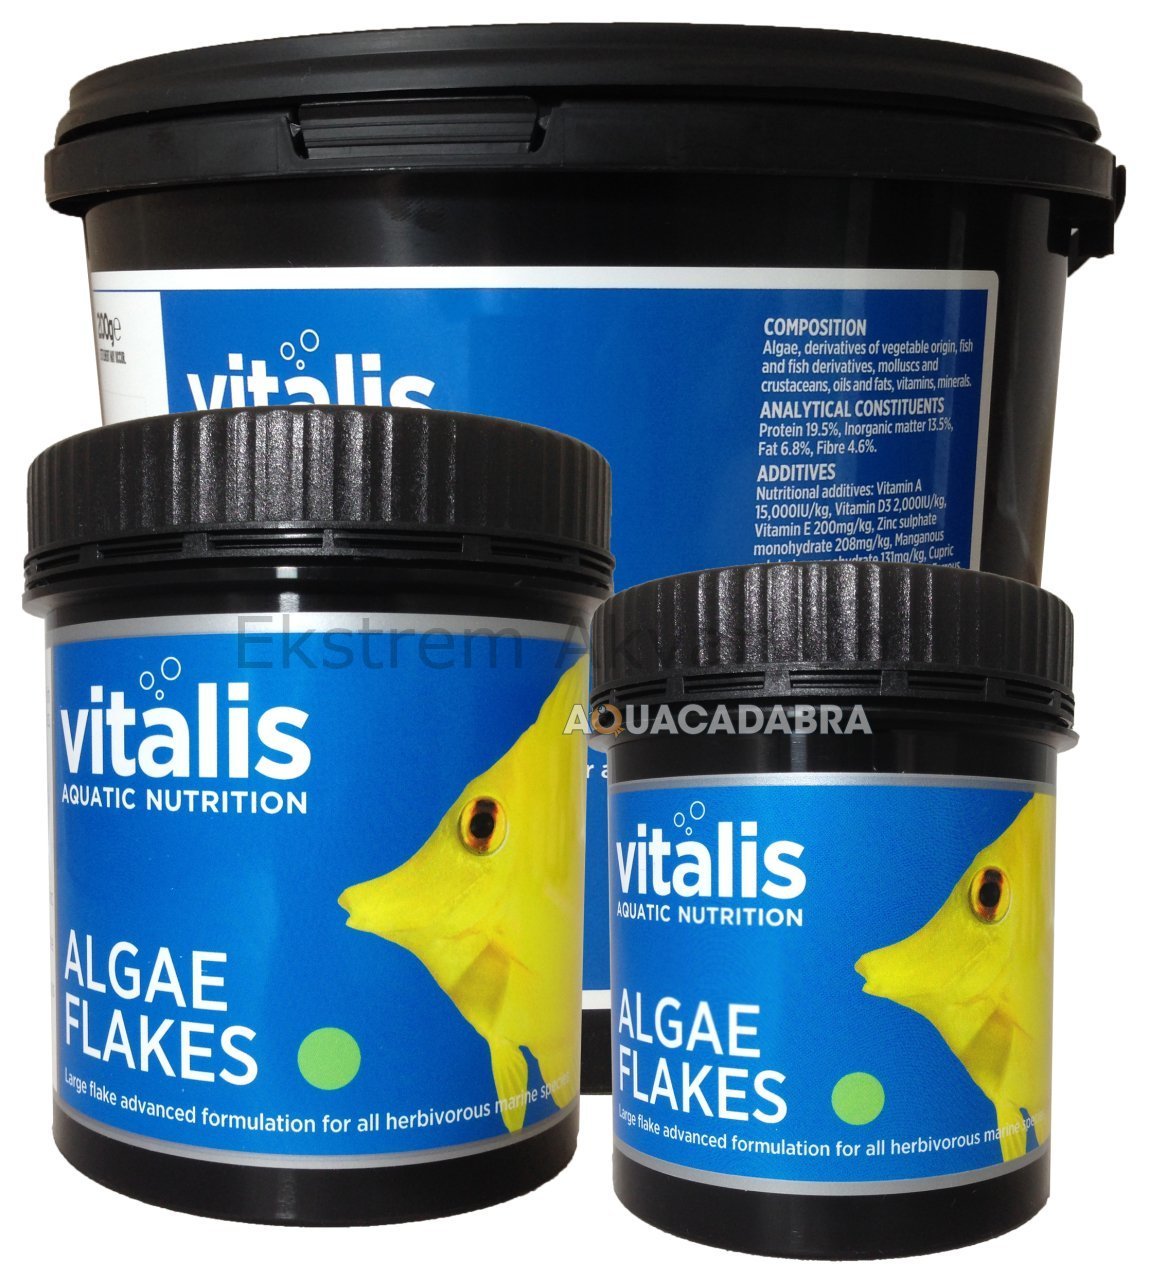 Vitalis - Algae Flakes 30 gr